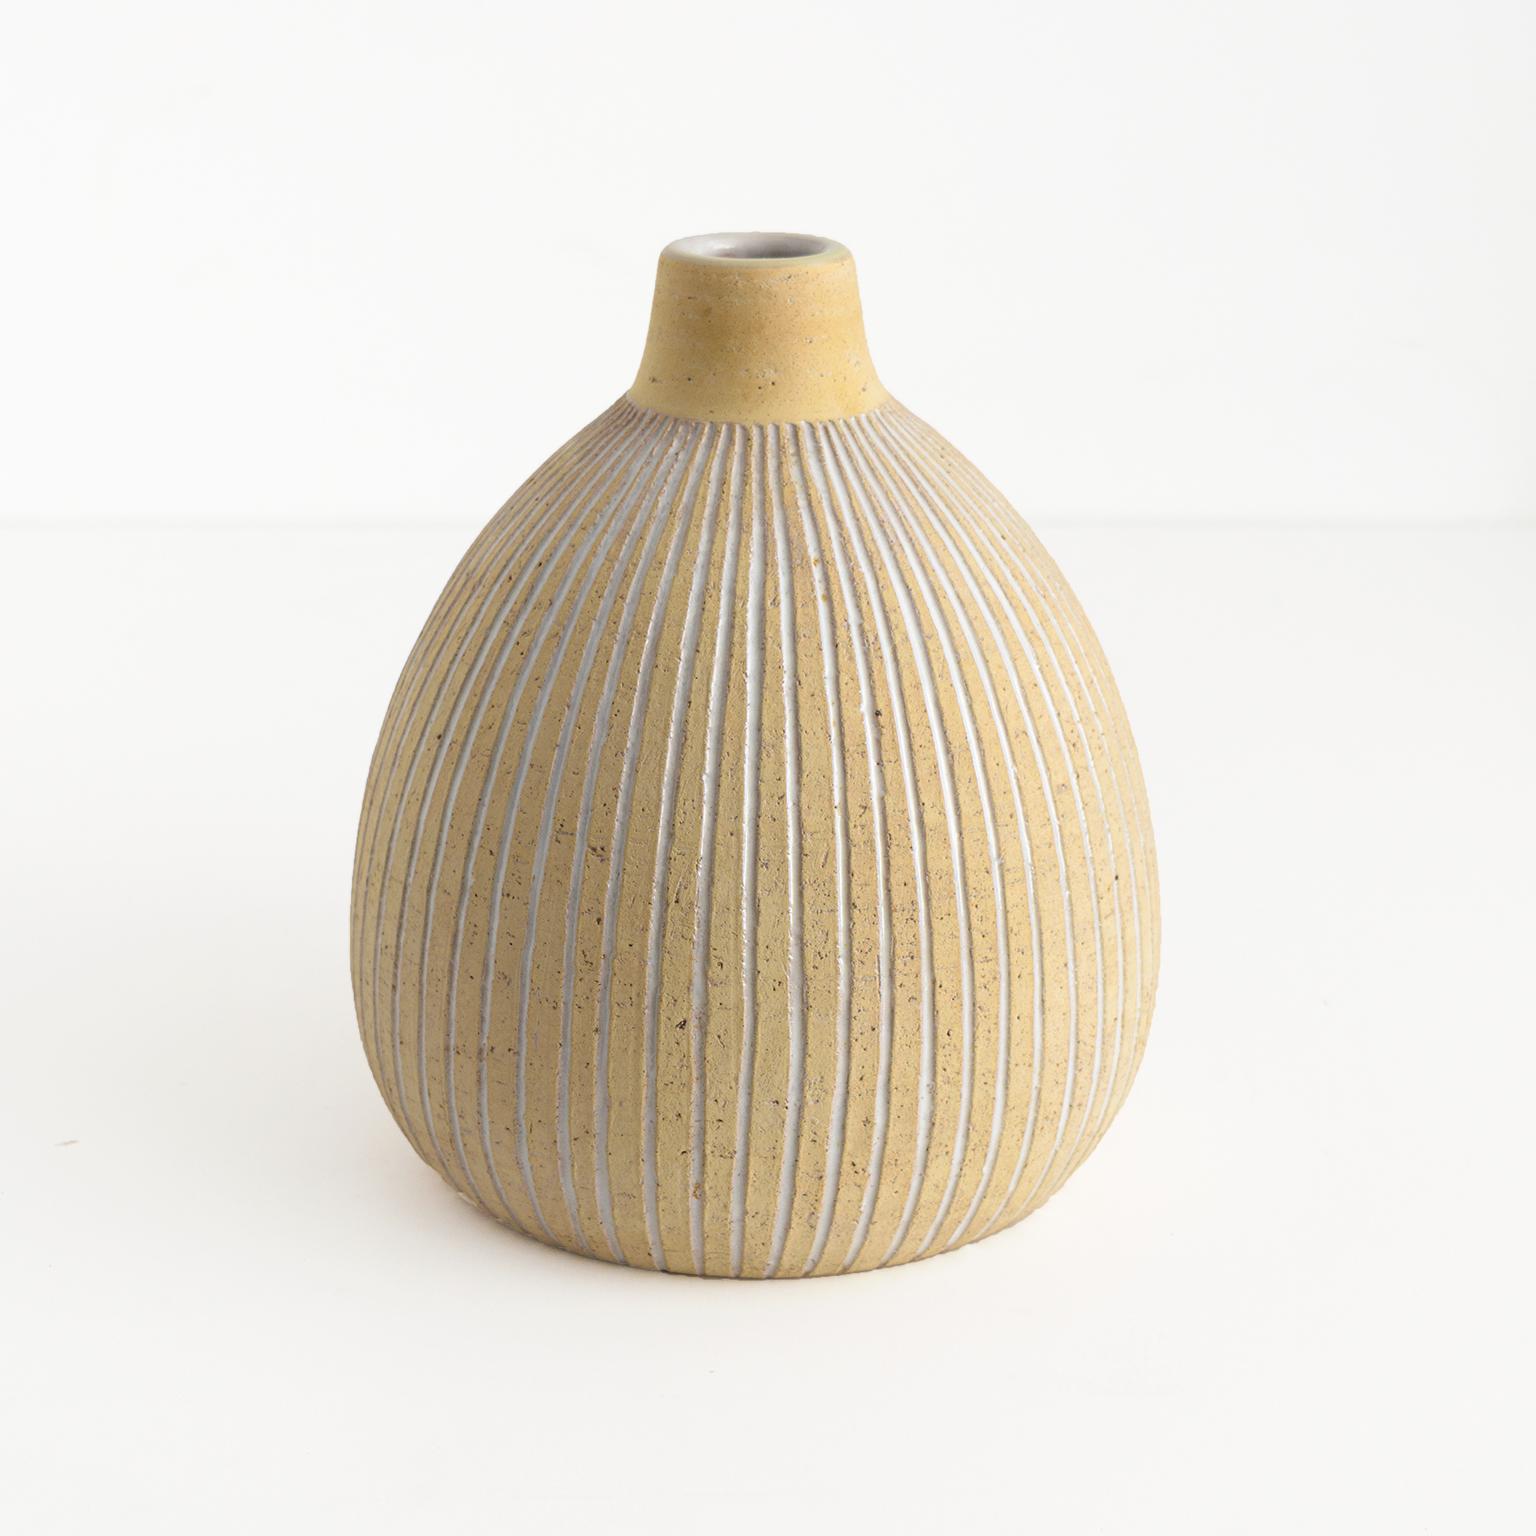 Edgar Böckman Scandinavian Modern partial glazed ceramic vase with carved grooves for Höganás, Sweden. Signed 